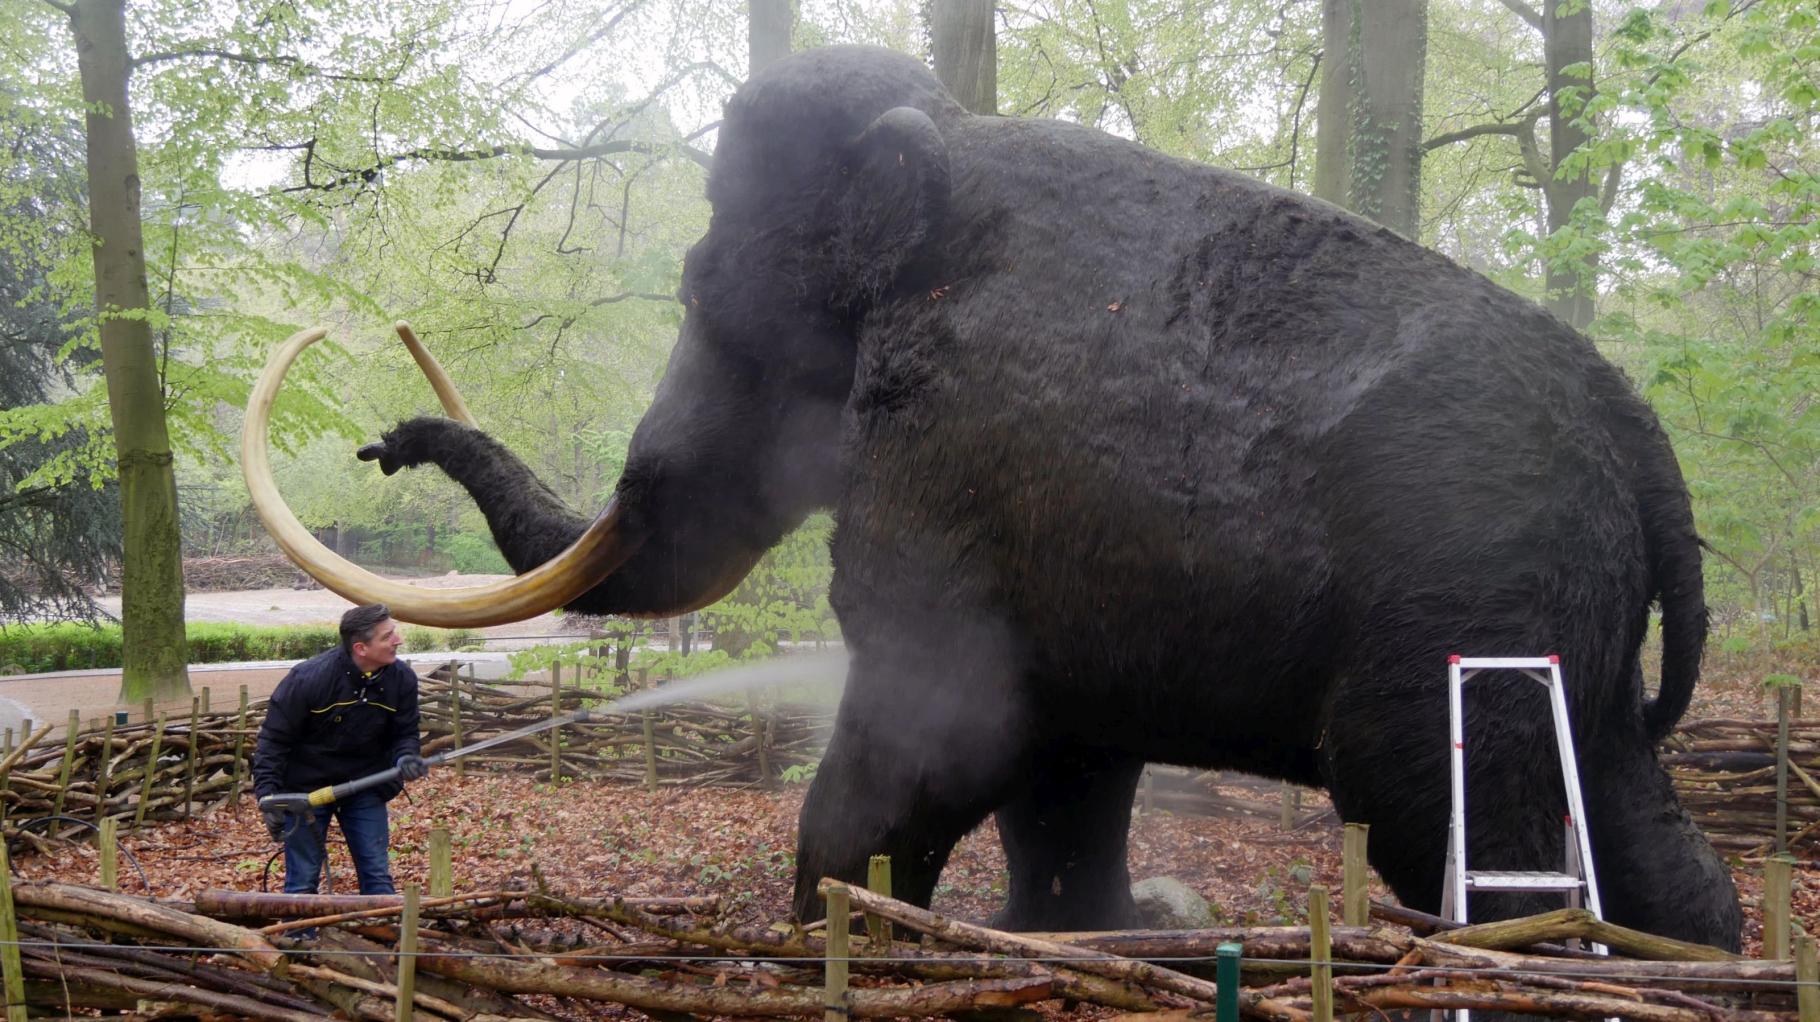 Ordentlich abgestrahlt: Frischekur für Mammut Manni im Rostocker Zoo